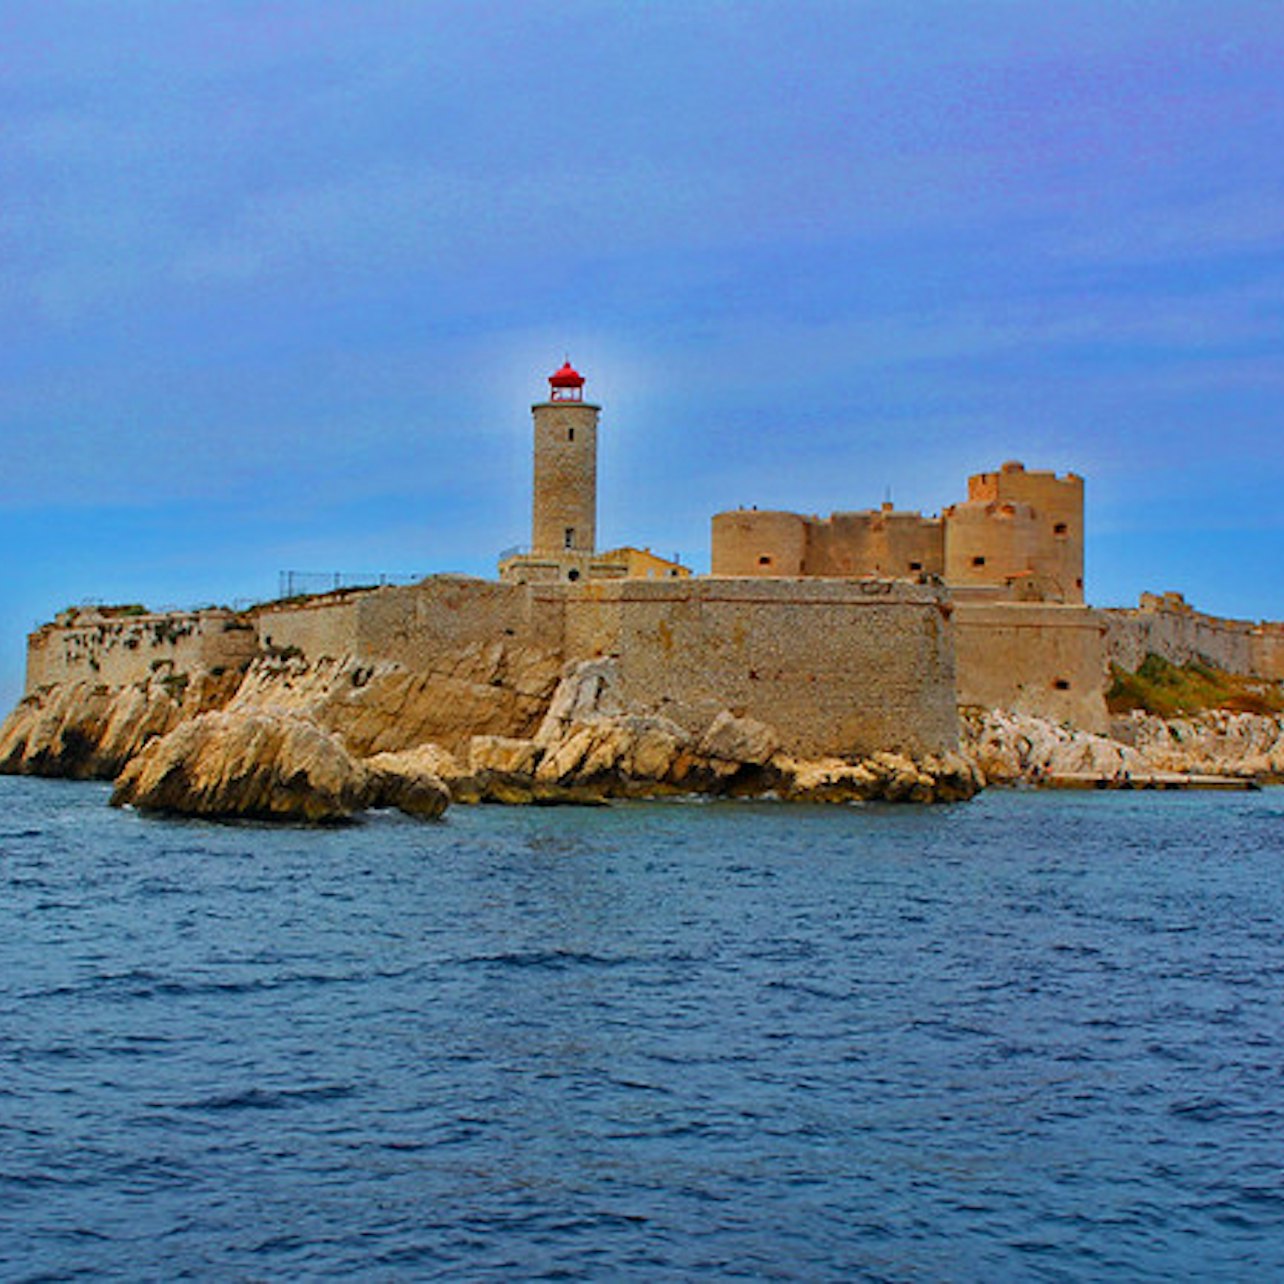 Castelo de If: acesso rápido - Acomodações em Marselha